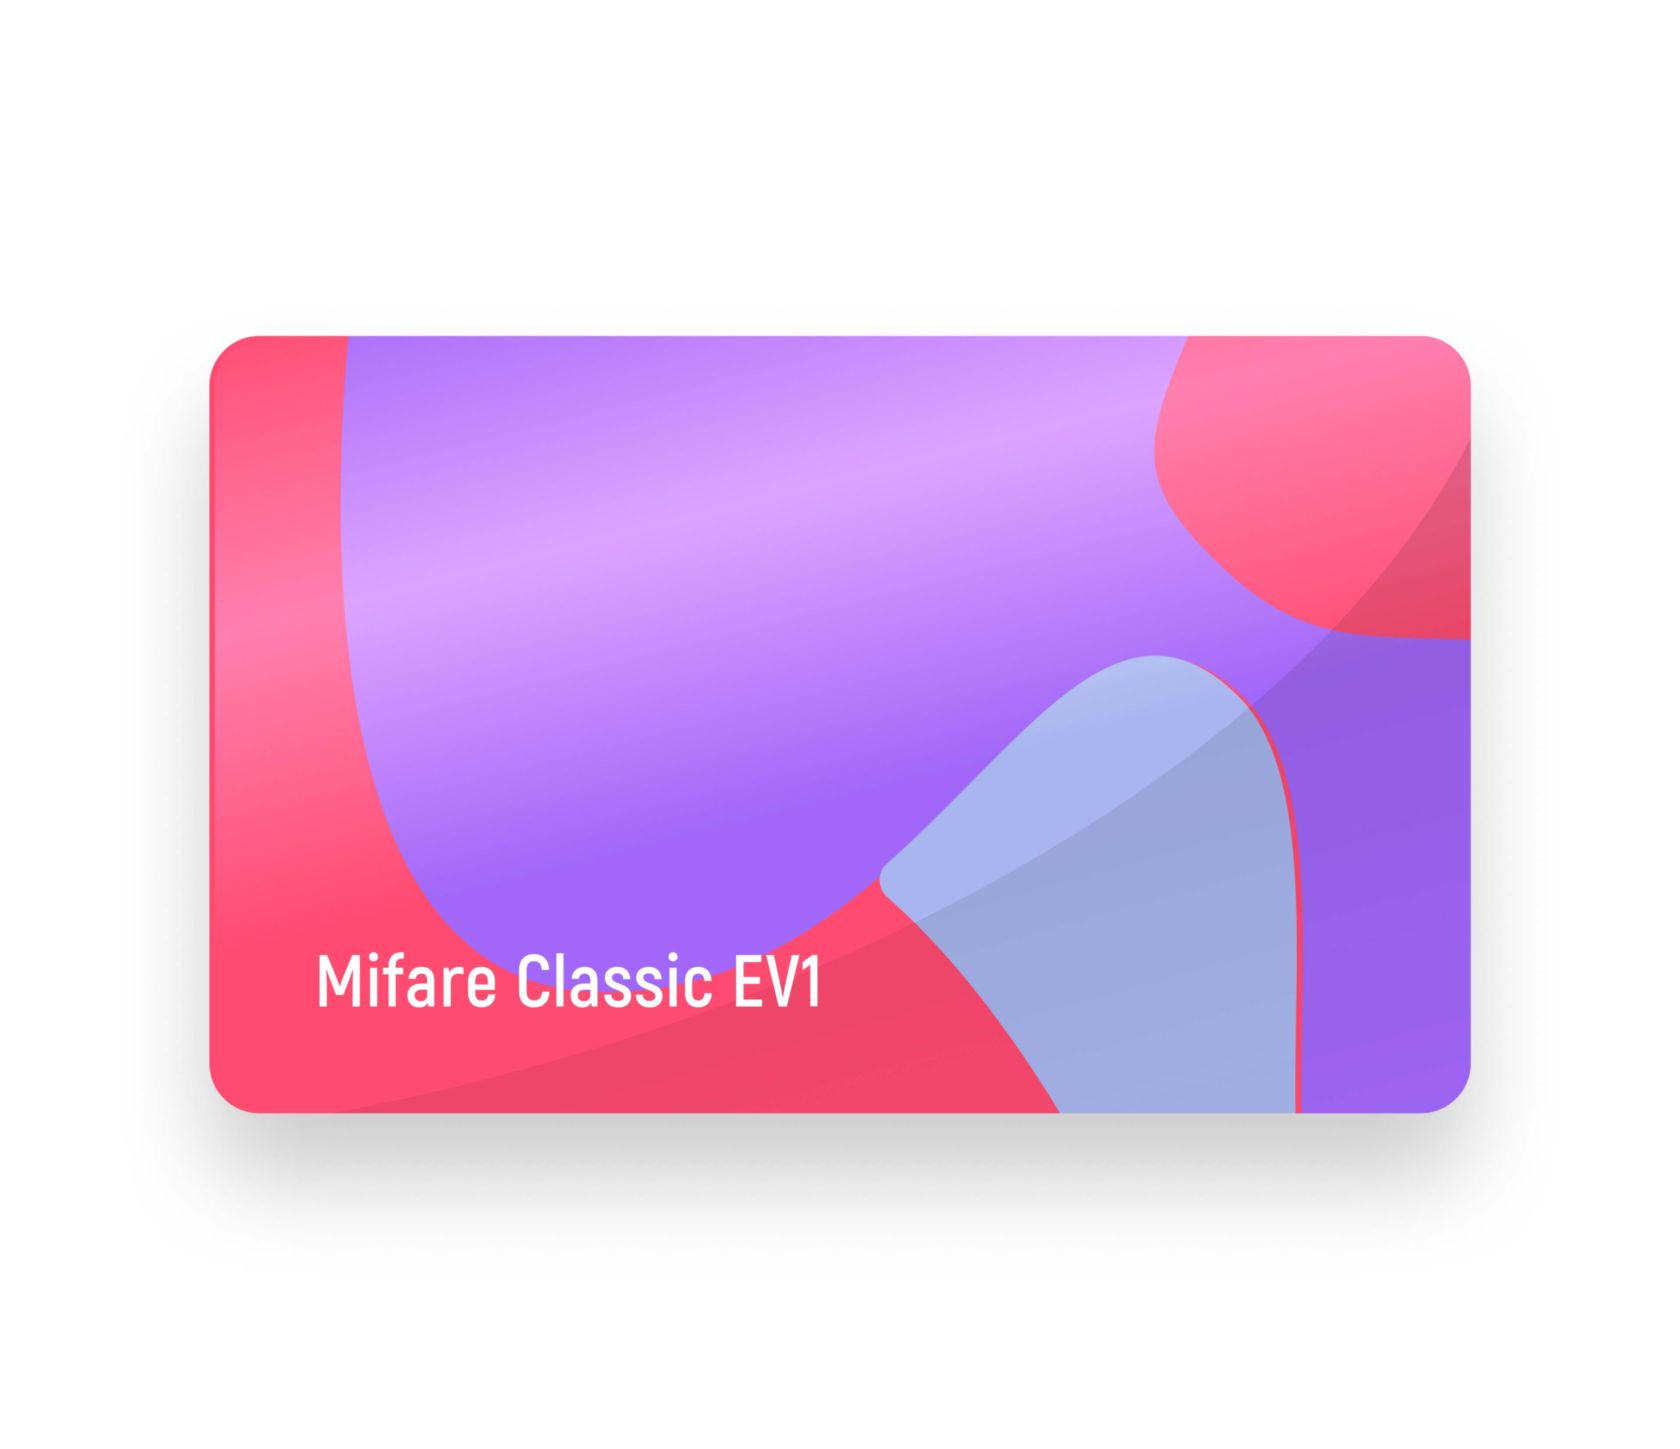 Mifare Classic EV1